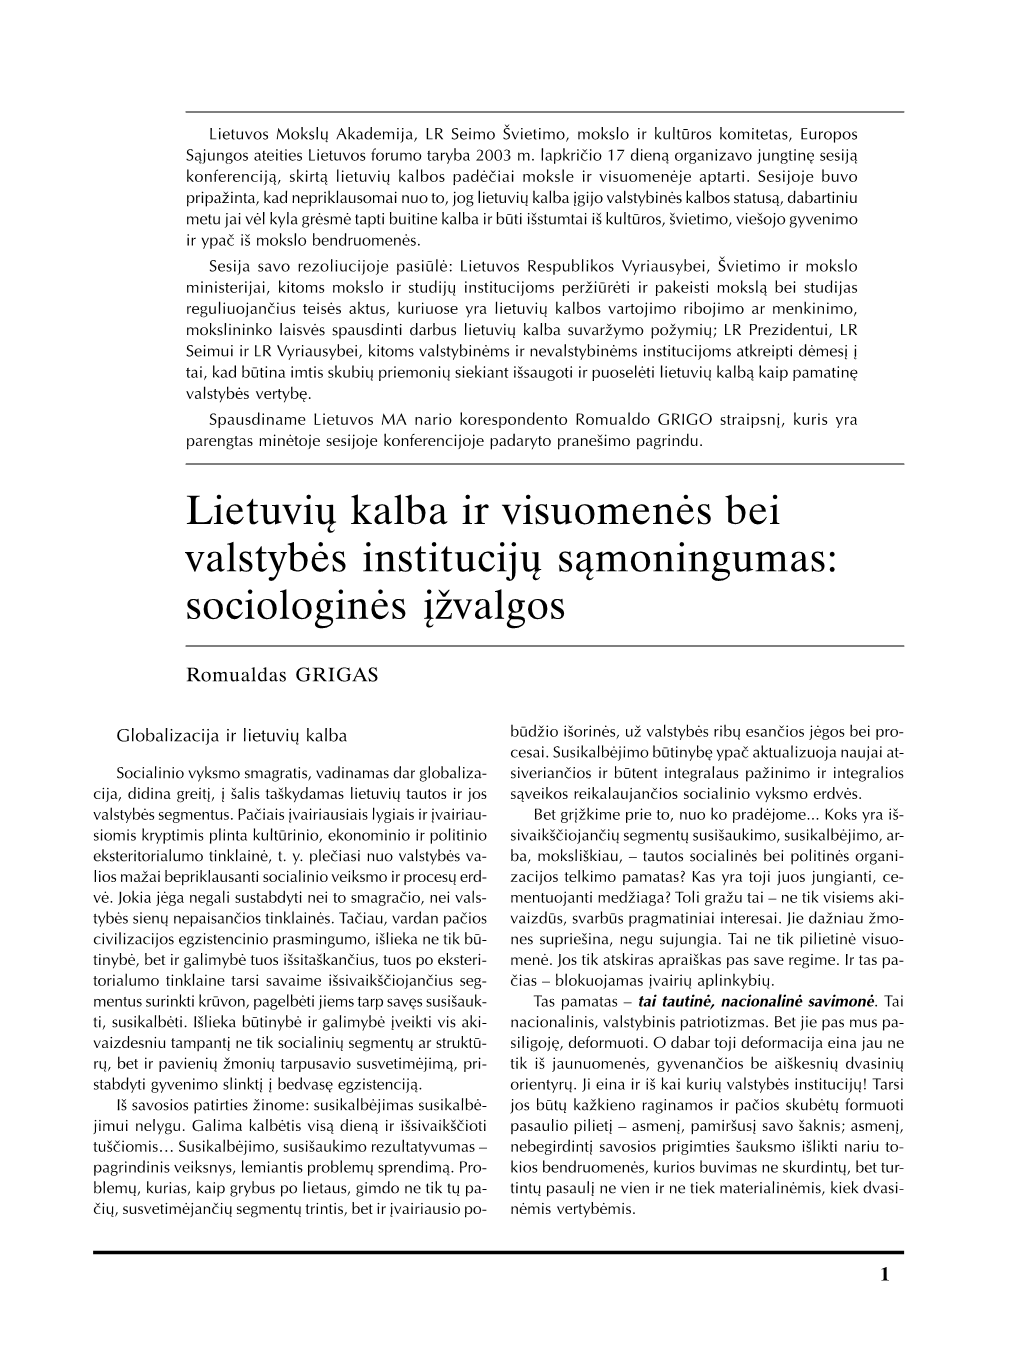 Lietuvių Kalba Ir Visuomenės Bei Valstybės Institucijų Sąmoningumas